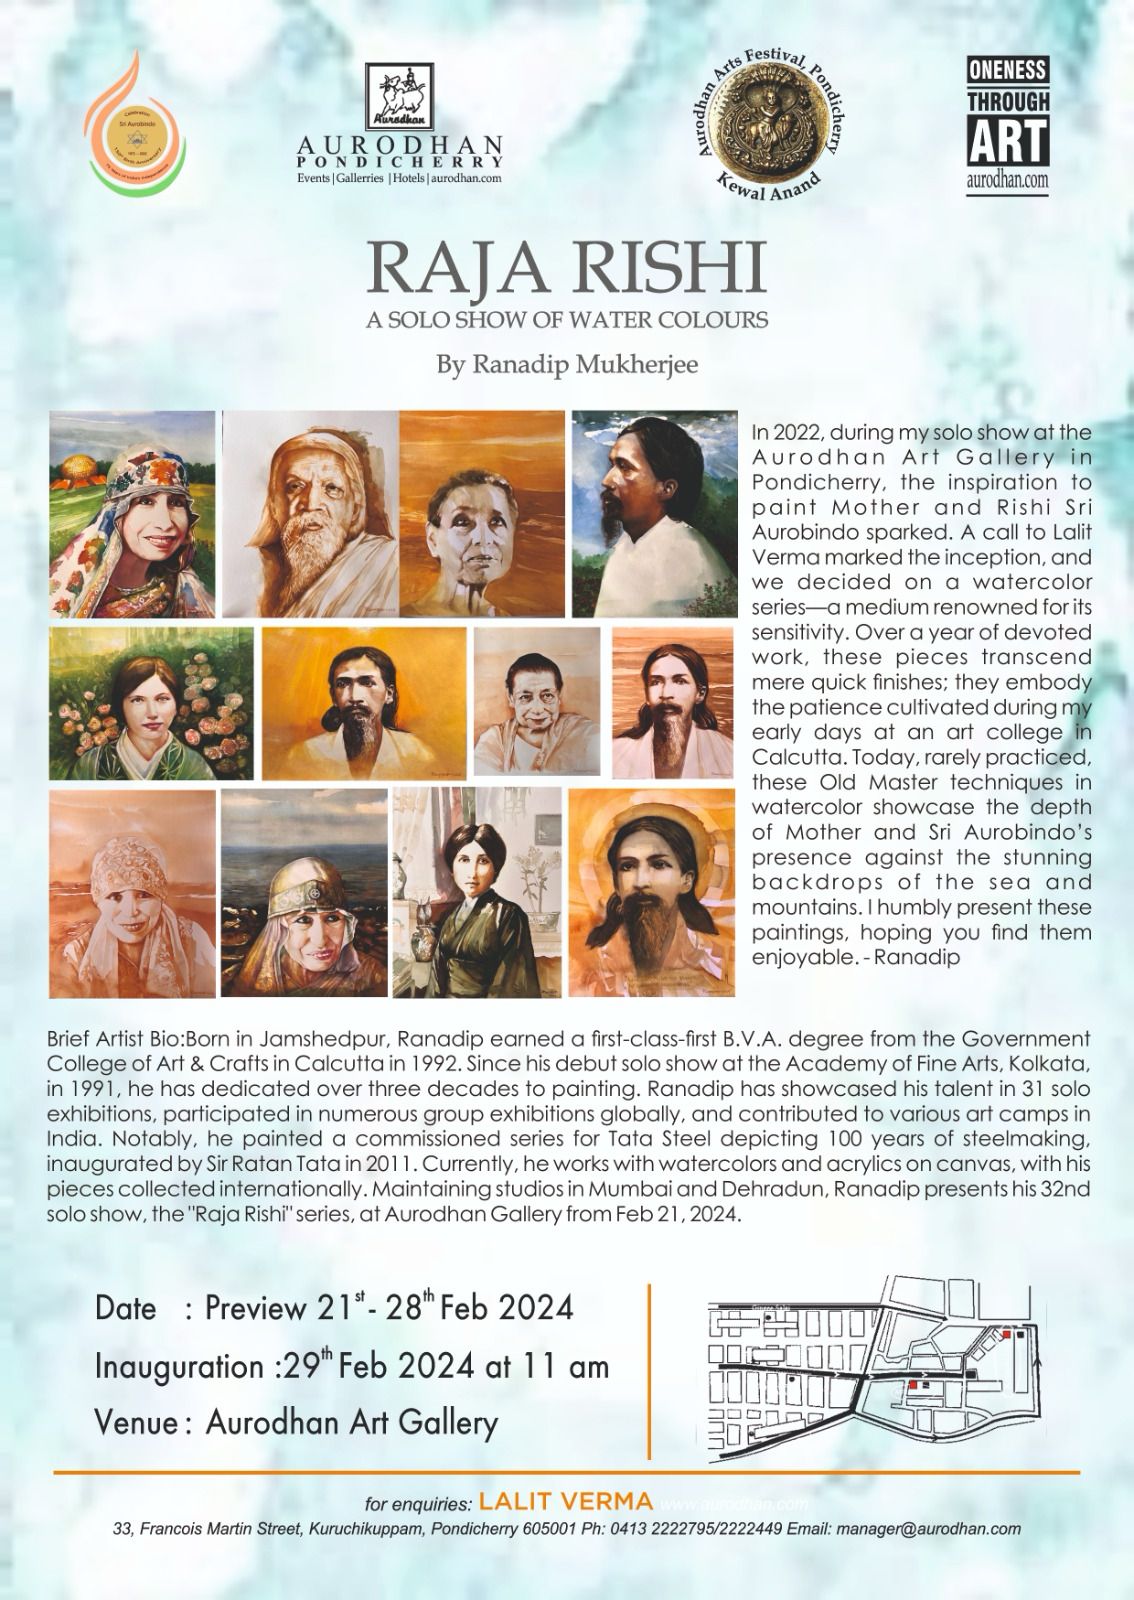 Raja Rishi Solo Show of Watercolours